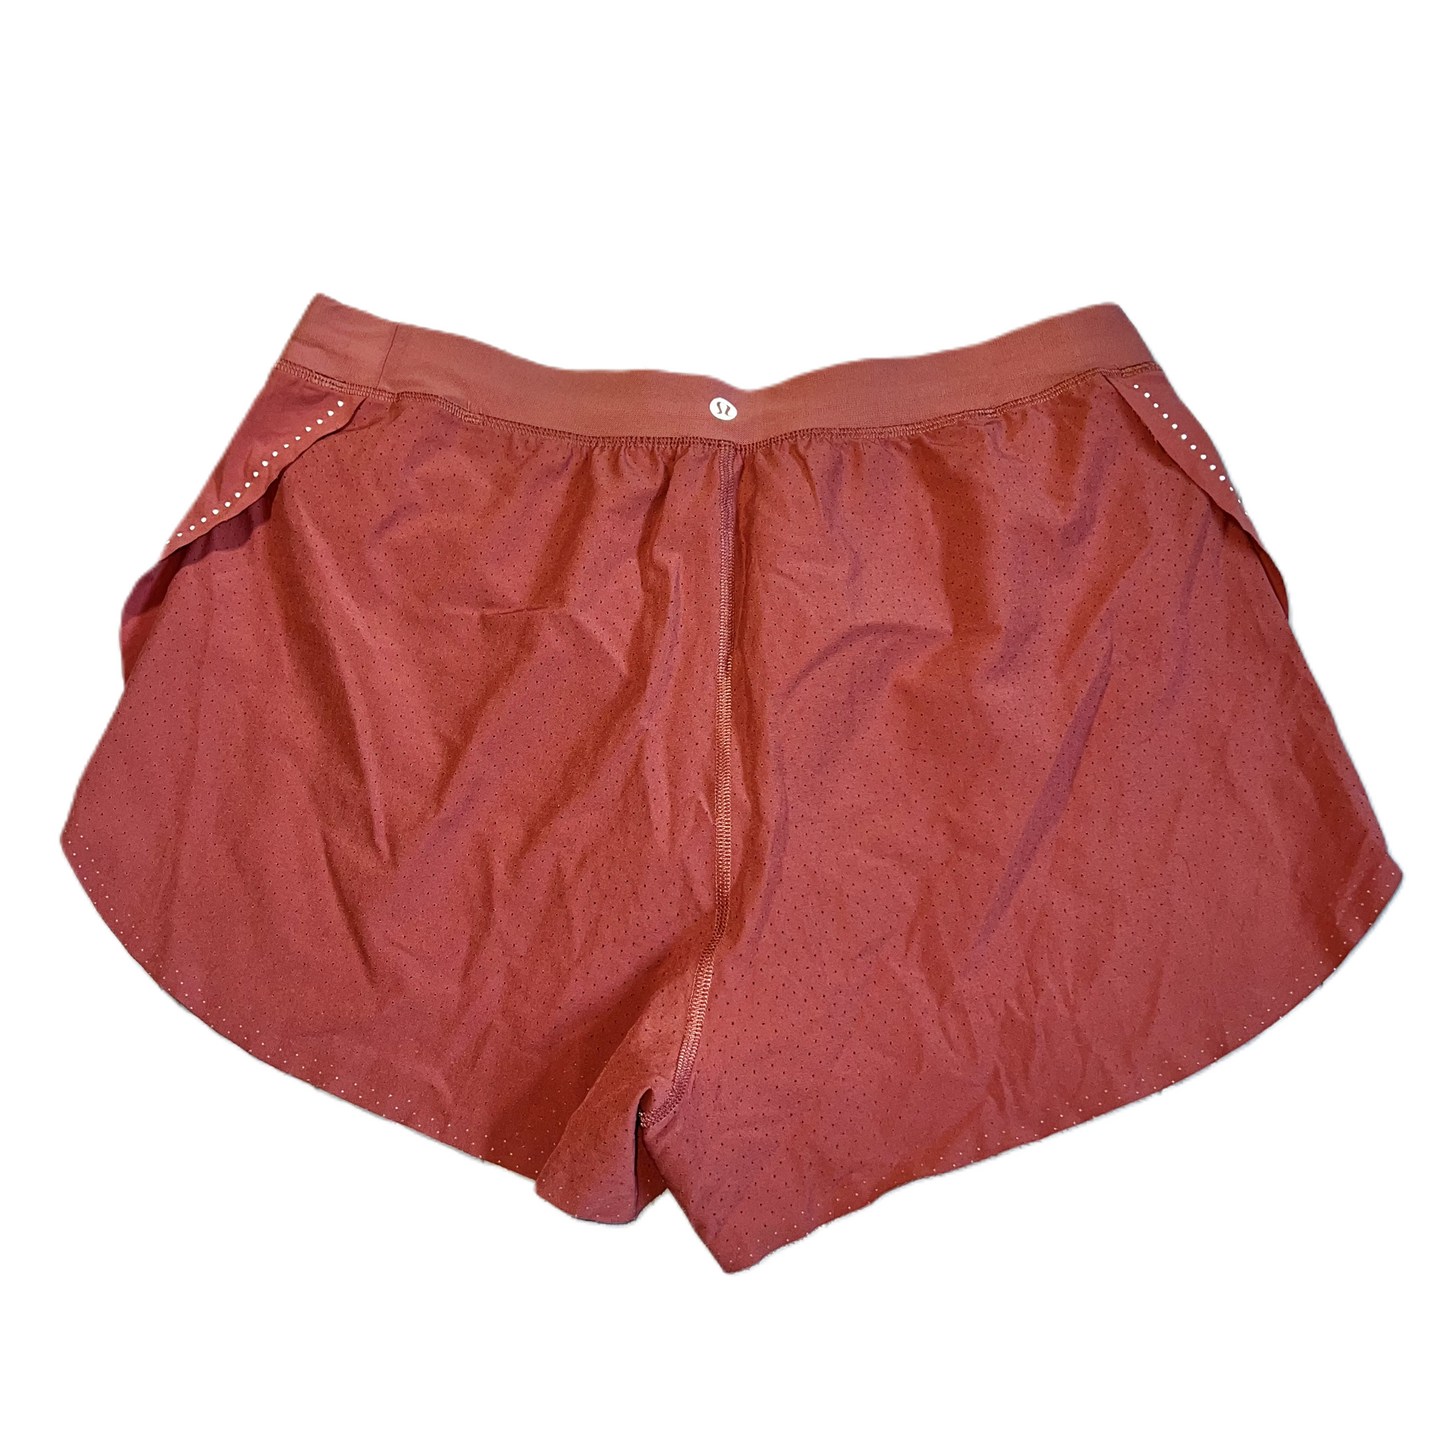 Pink Athletic Shorts By Lululemon, Size: M